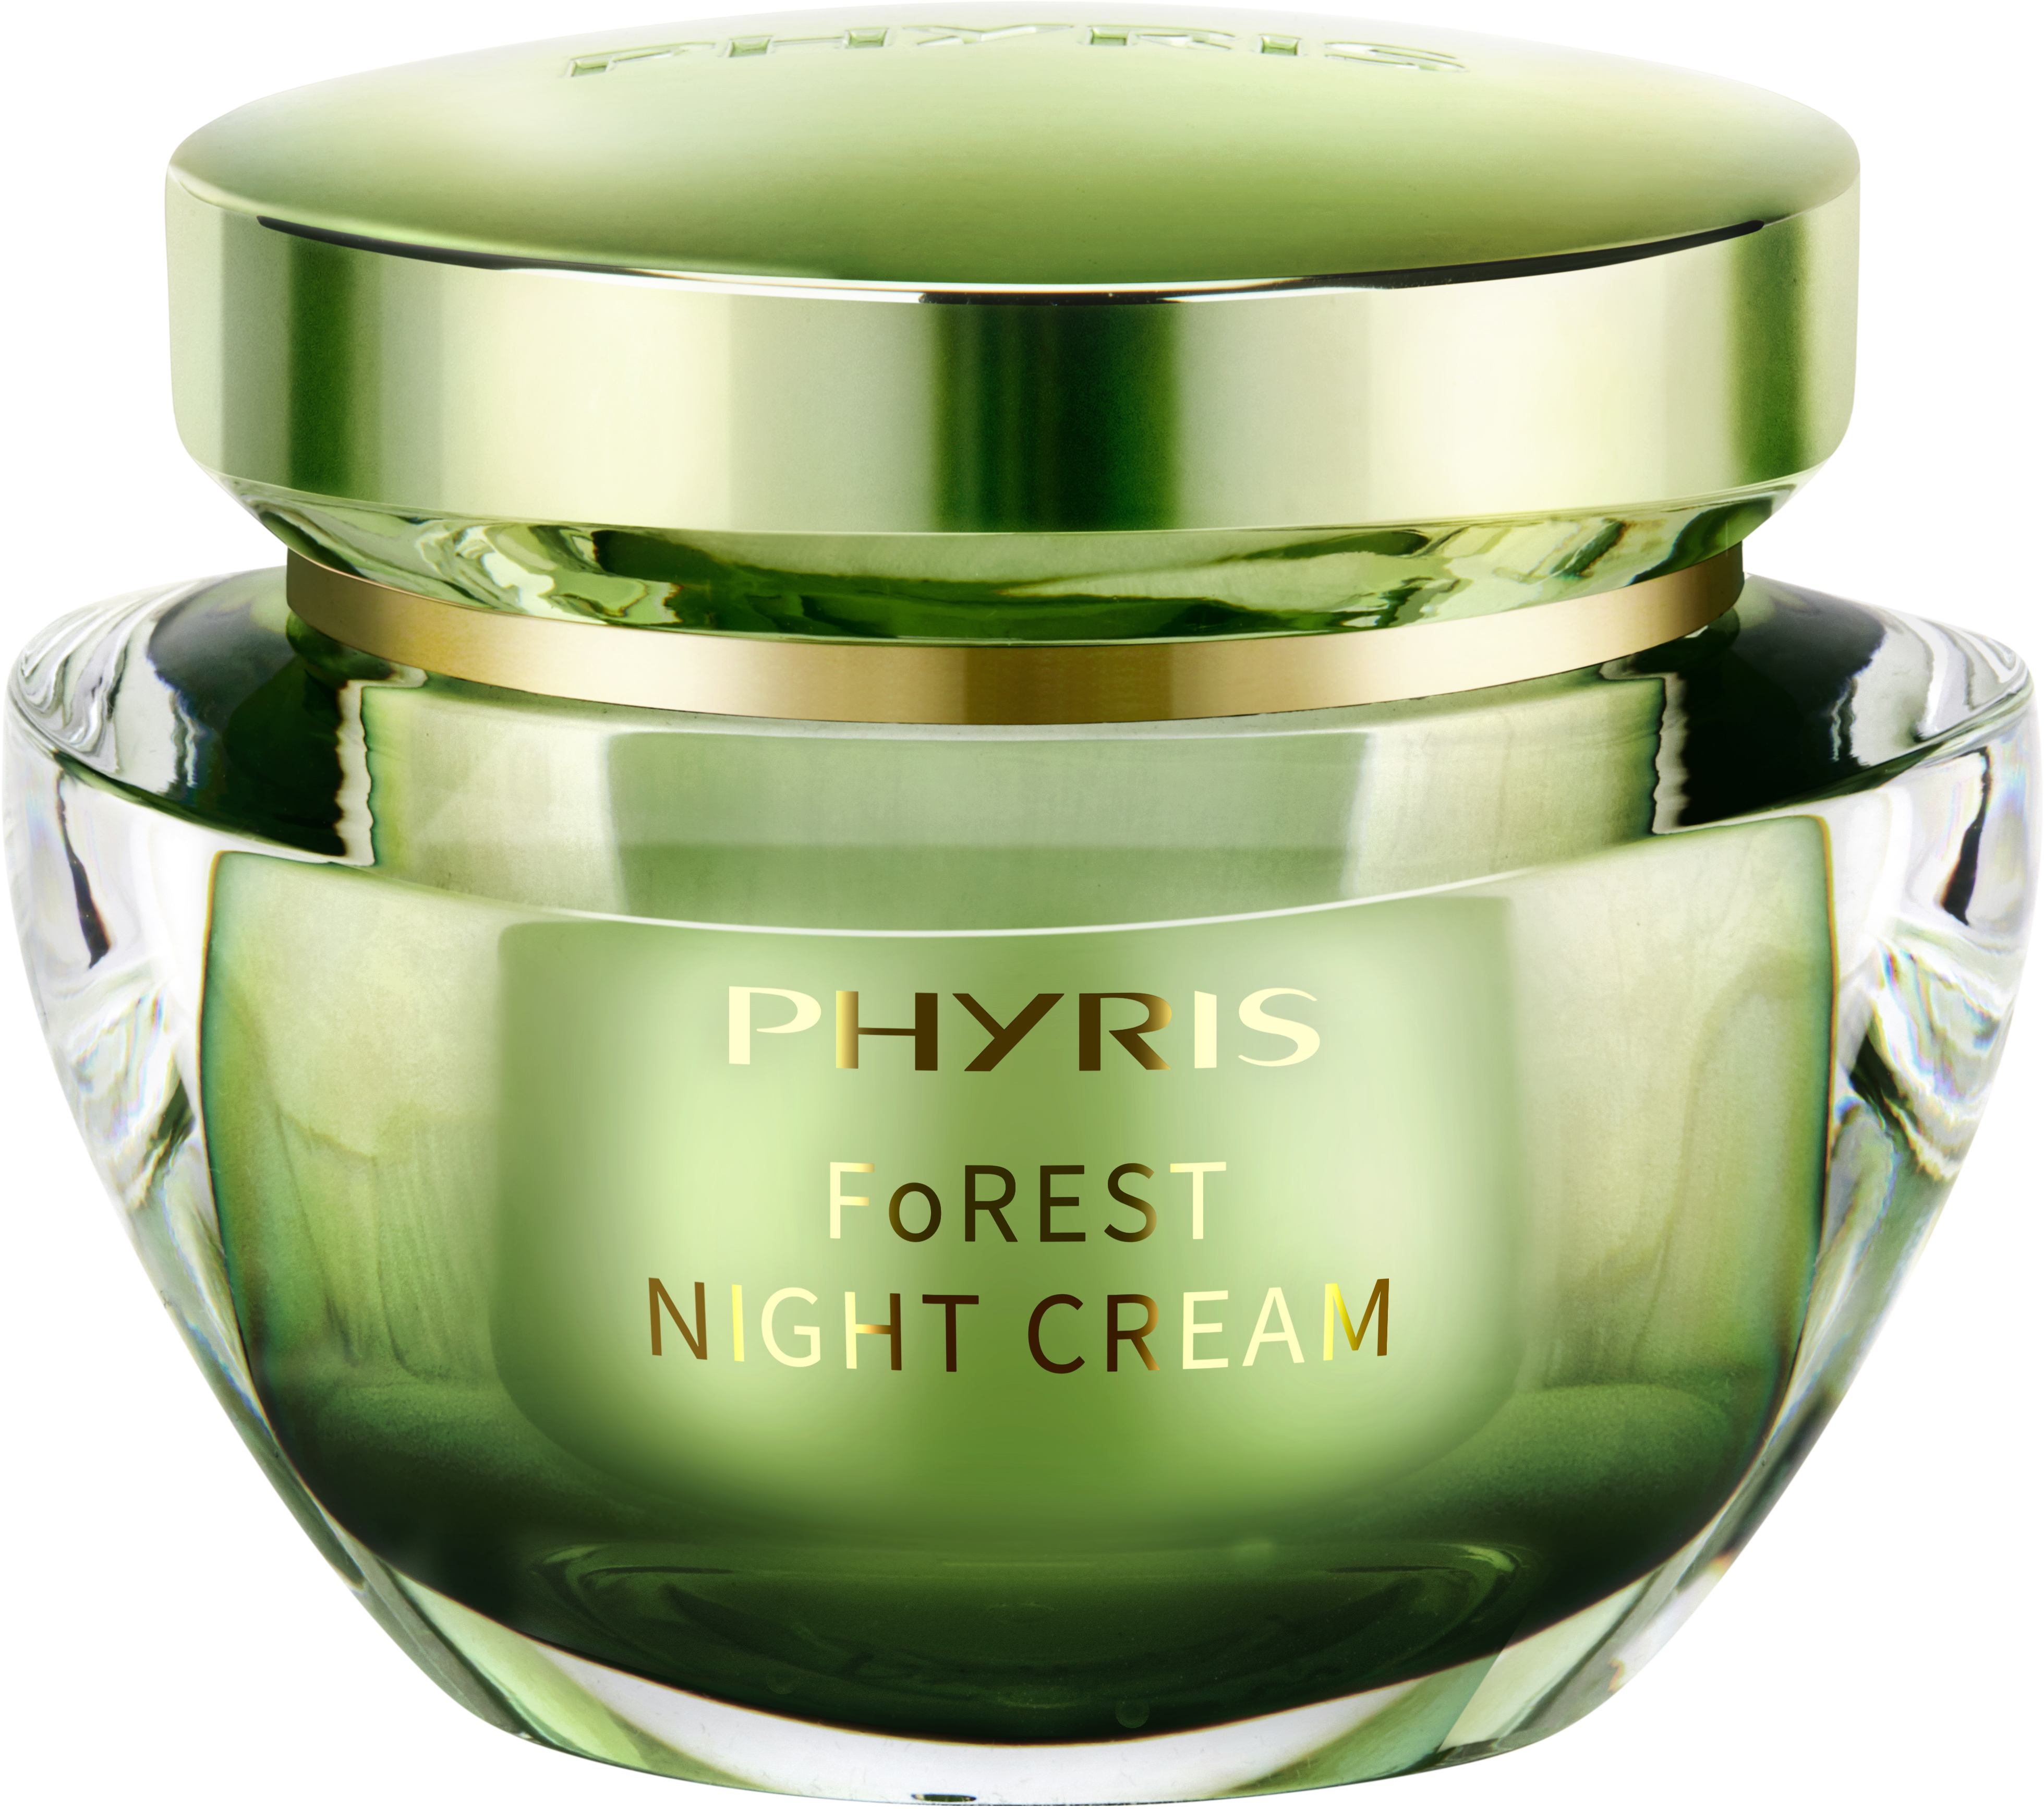 Forest Night Cream - Vitalisierende, nährende Nachtpflege